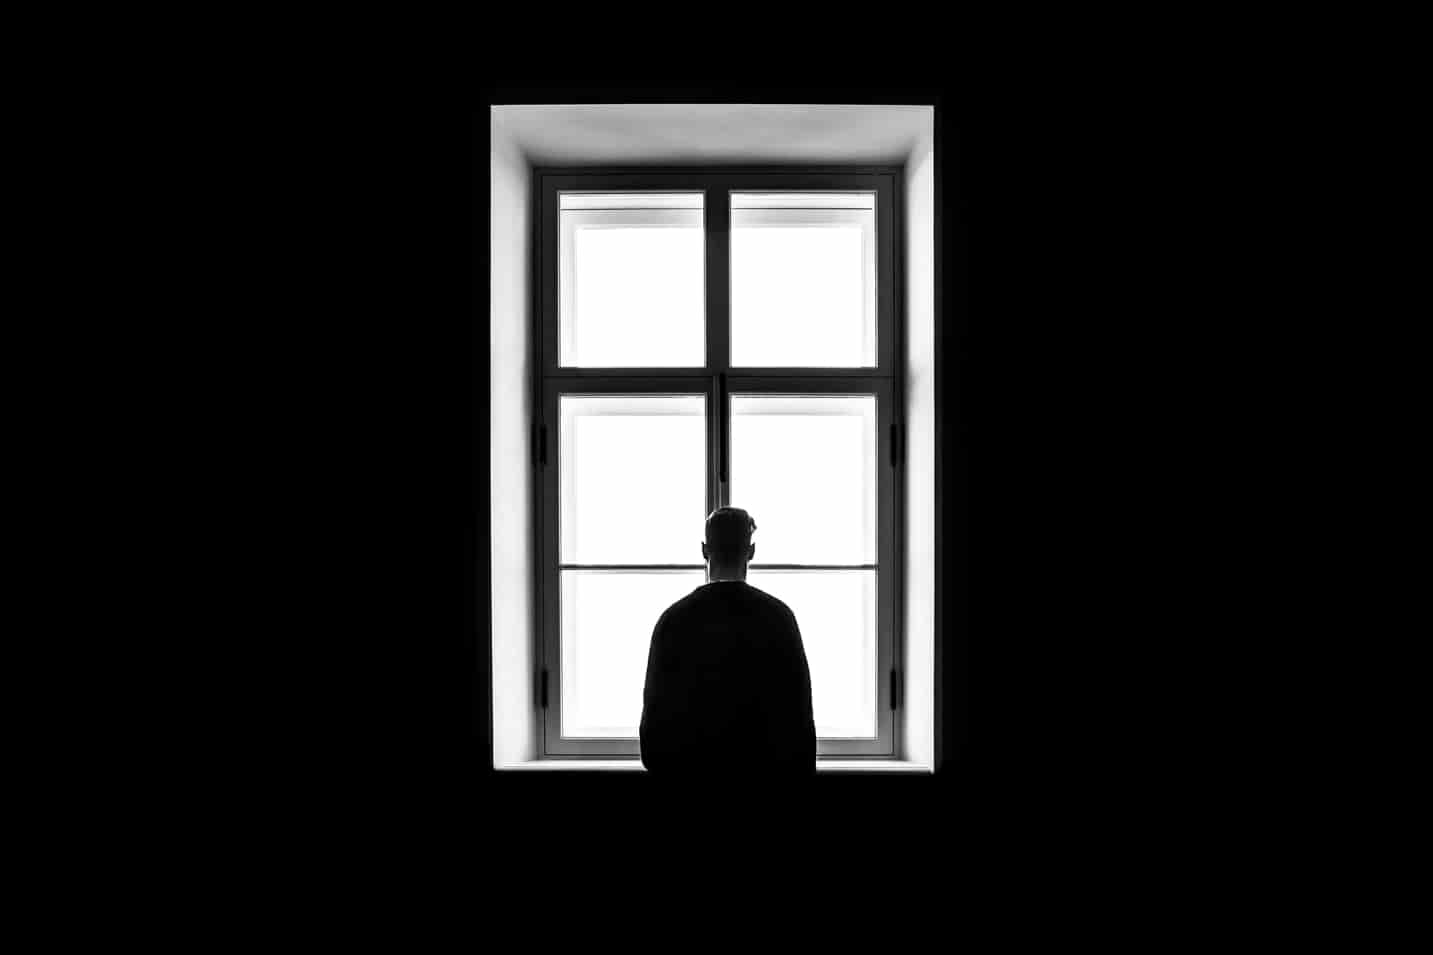 Man alone by window